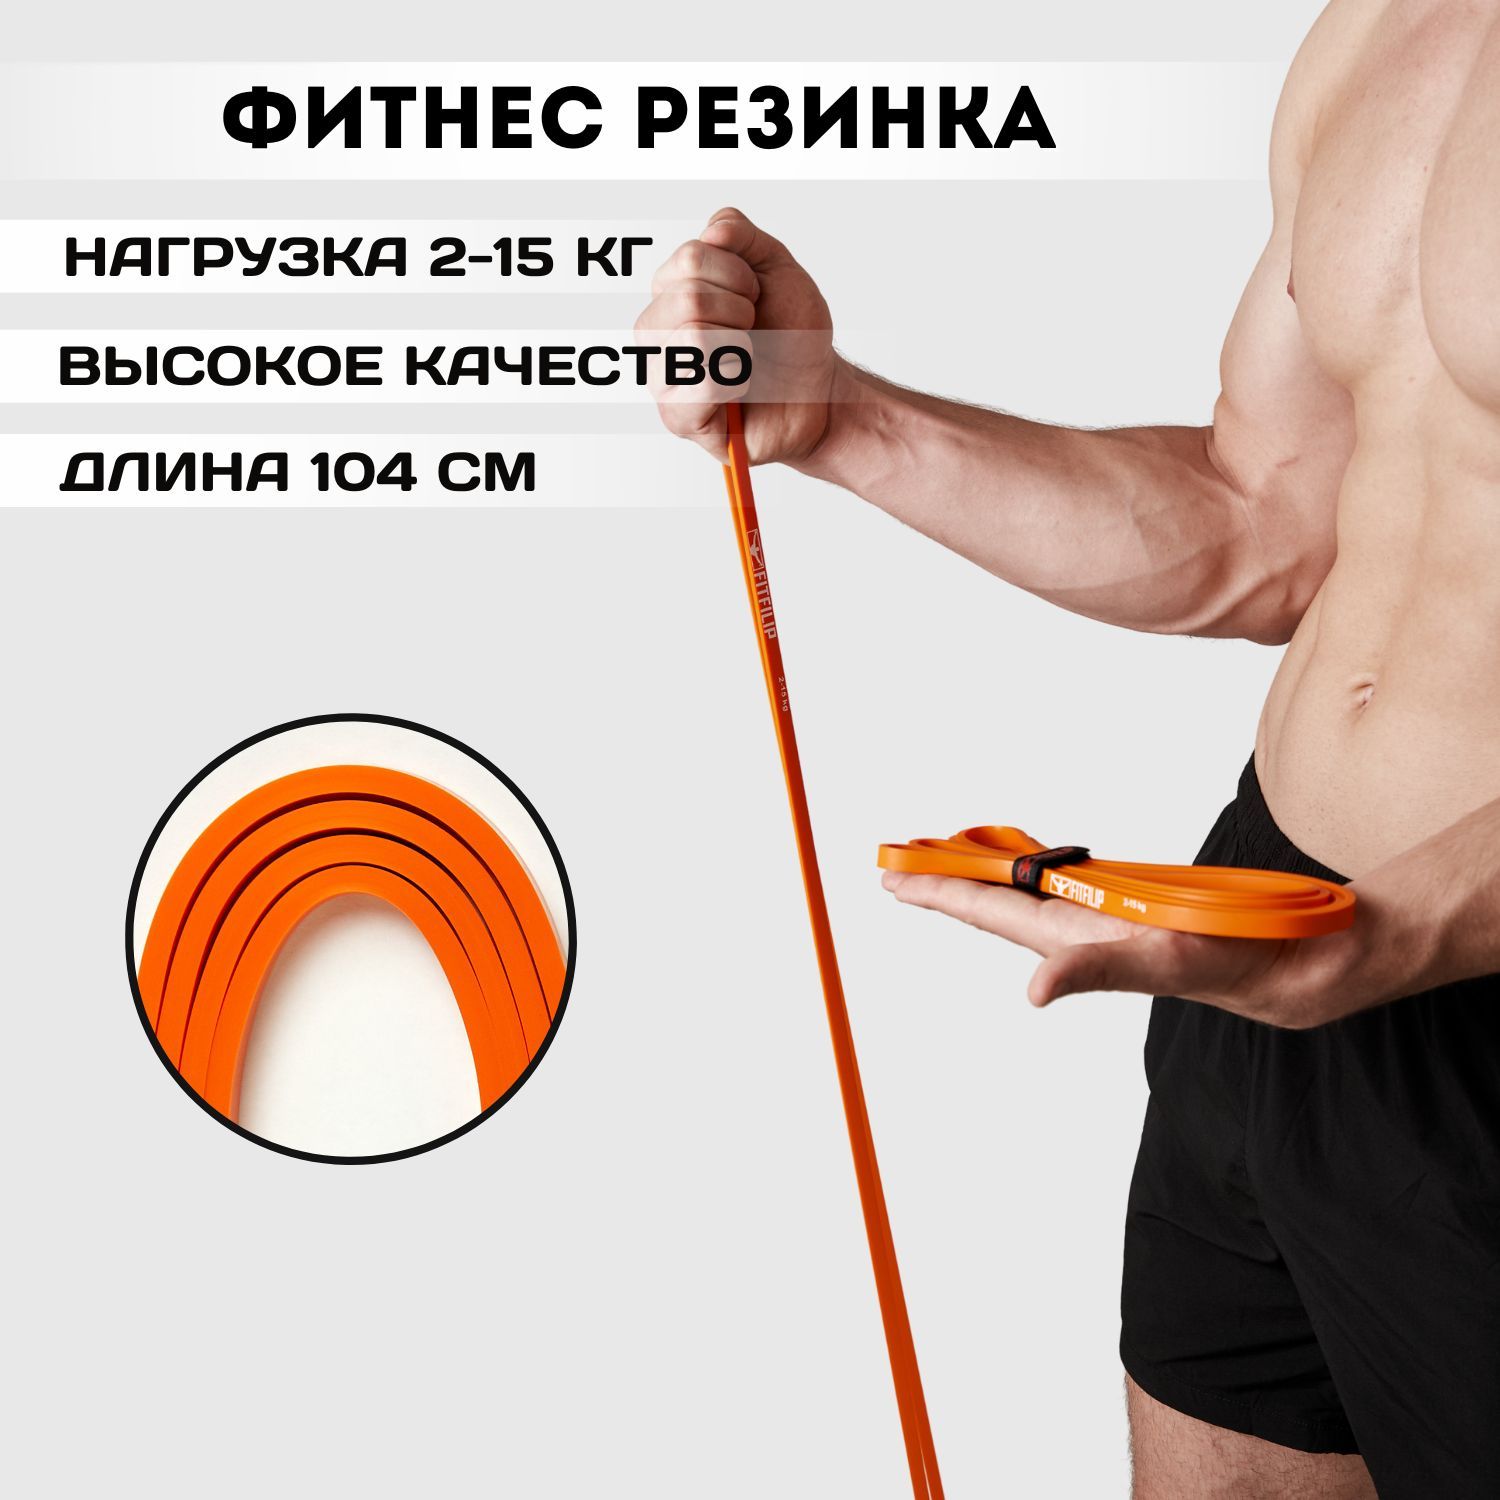 Упражнения с резиновой петлей для мужчин